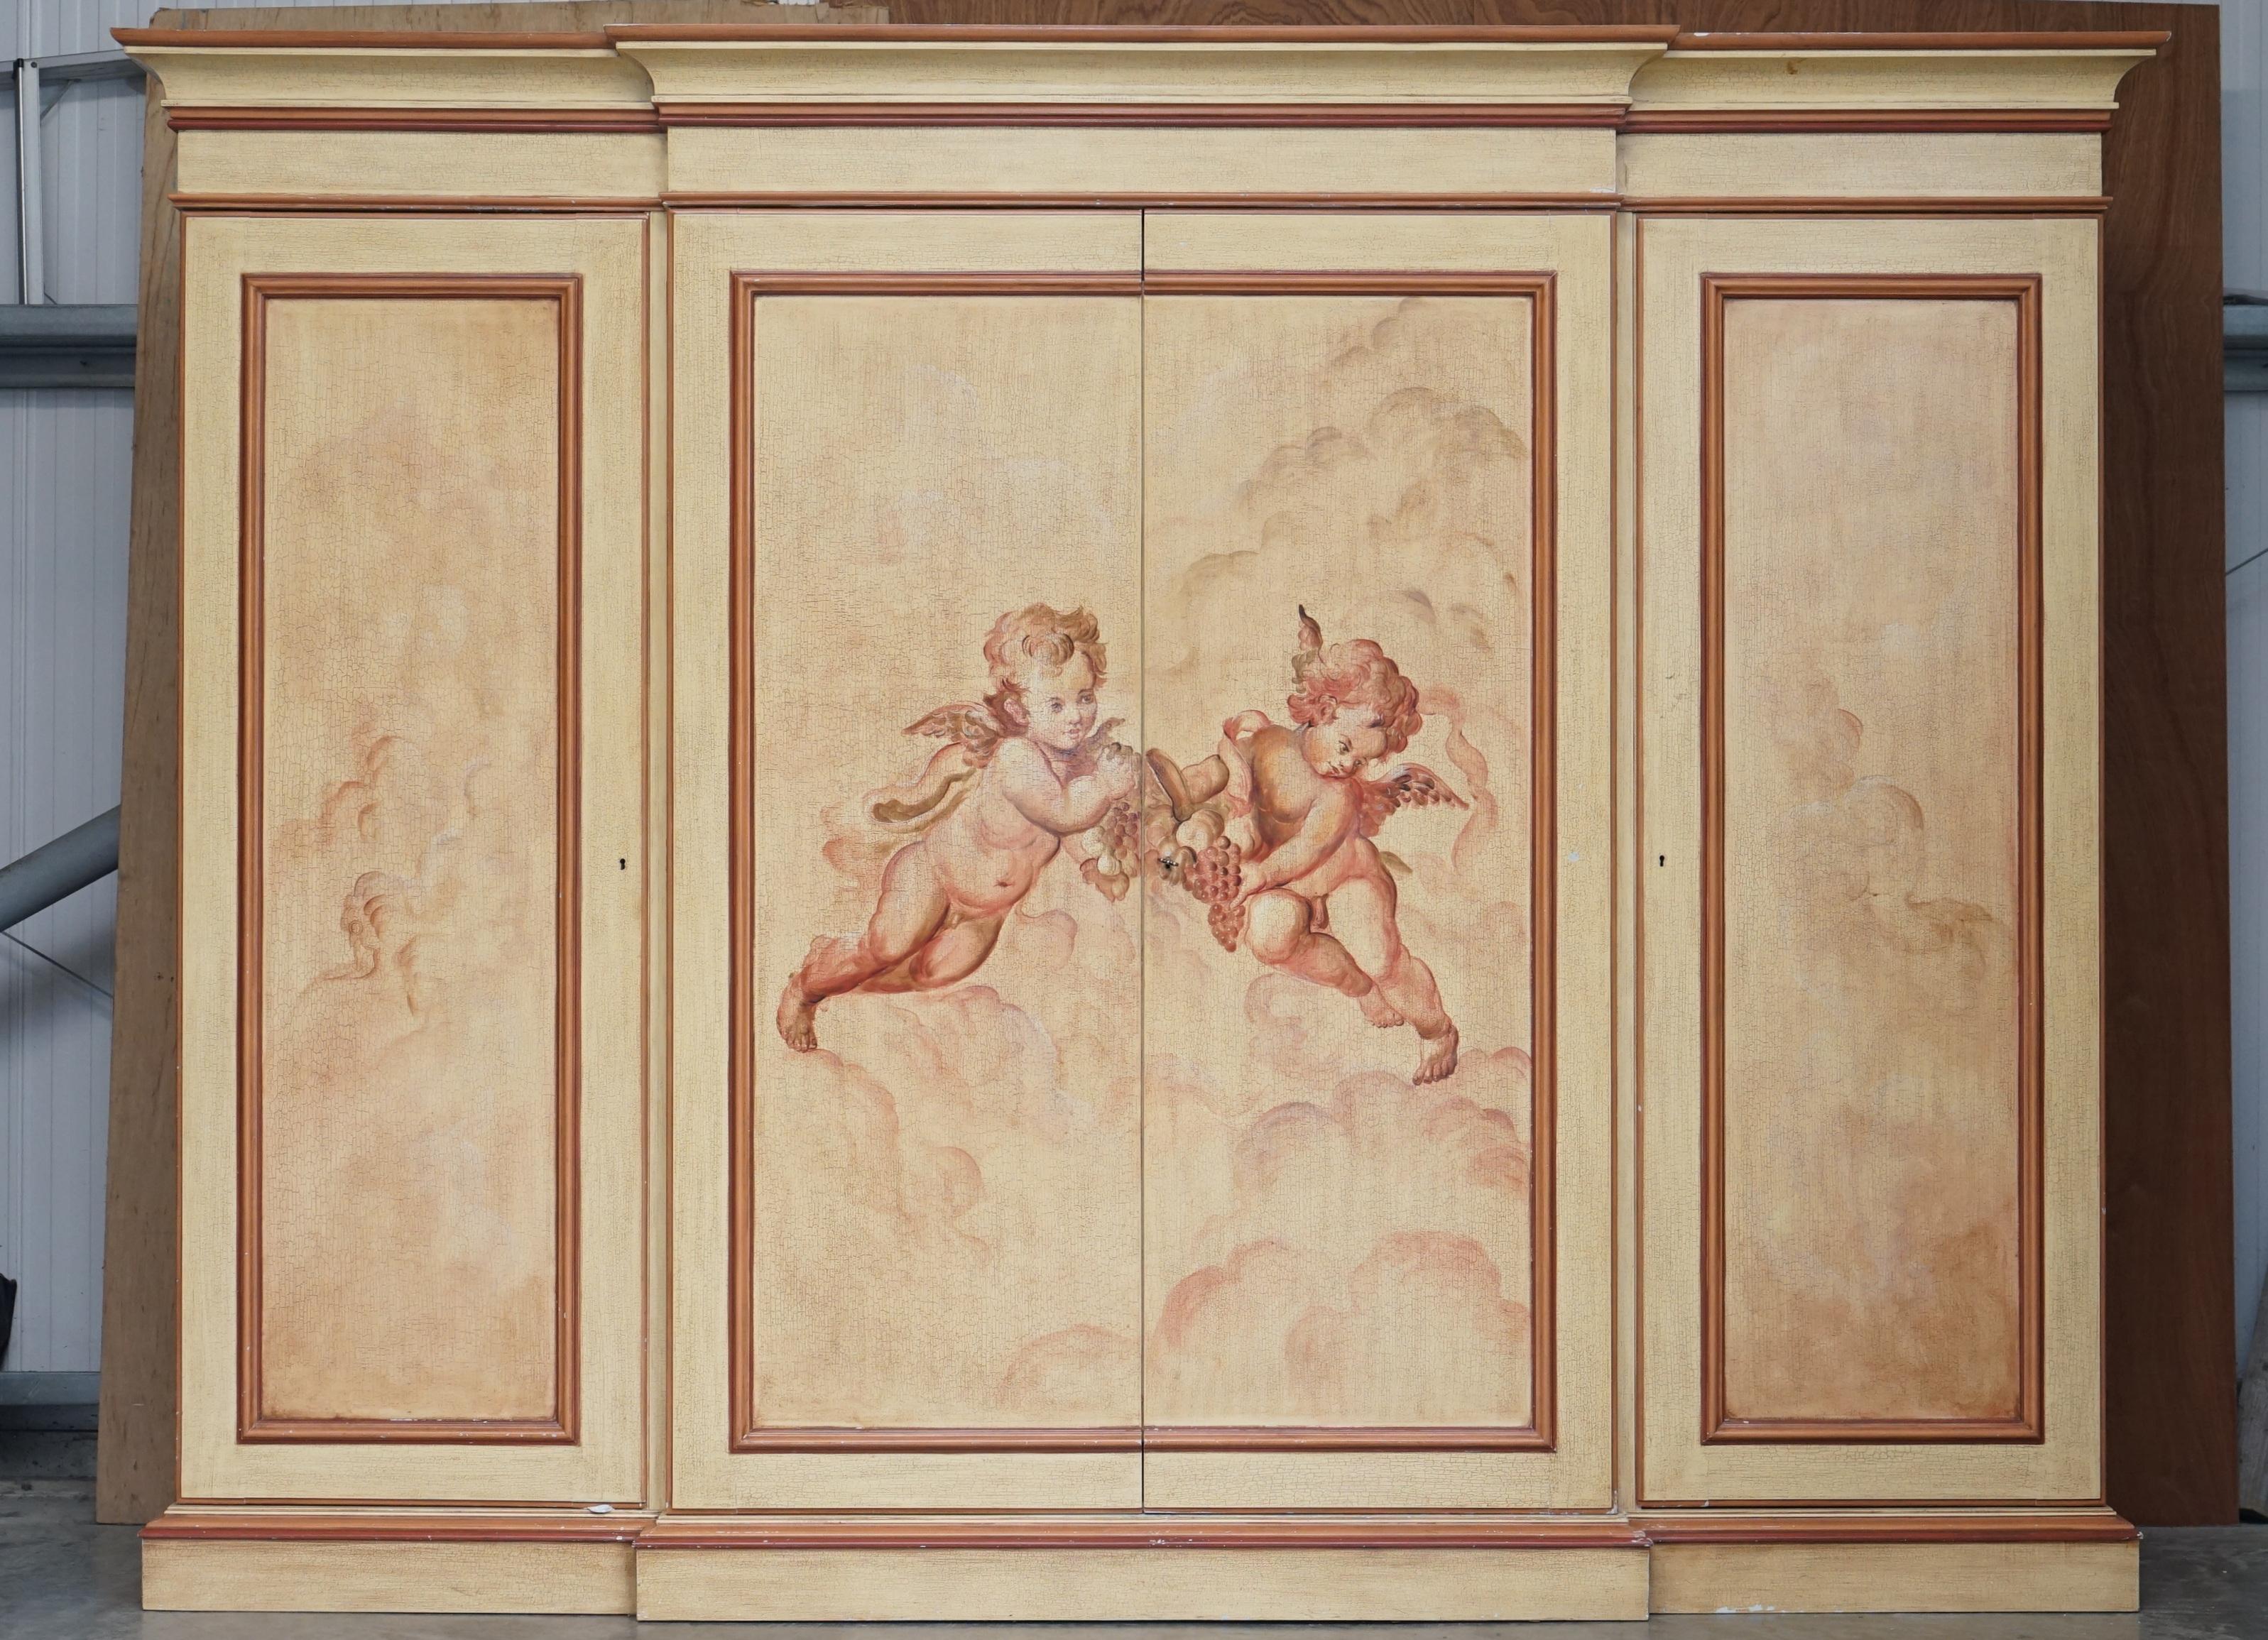 Nous sommes ravis d'offrir cette absolument magnifique, très grande, armoire à rupture de banc quadruple avec peinture française antique qui peut être entièrement démontée

Cette pièce est plutôt impressionnante, elle est moderne, avec une